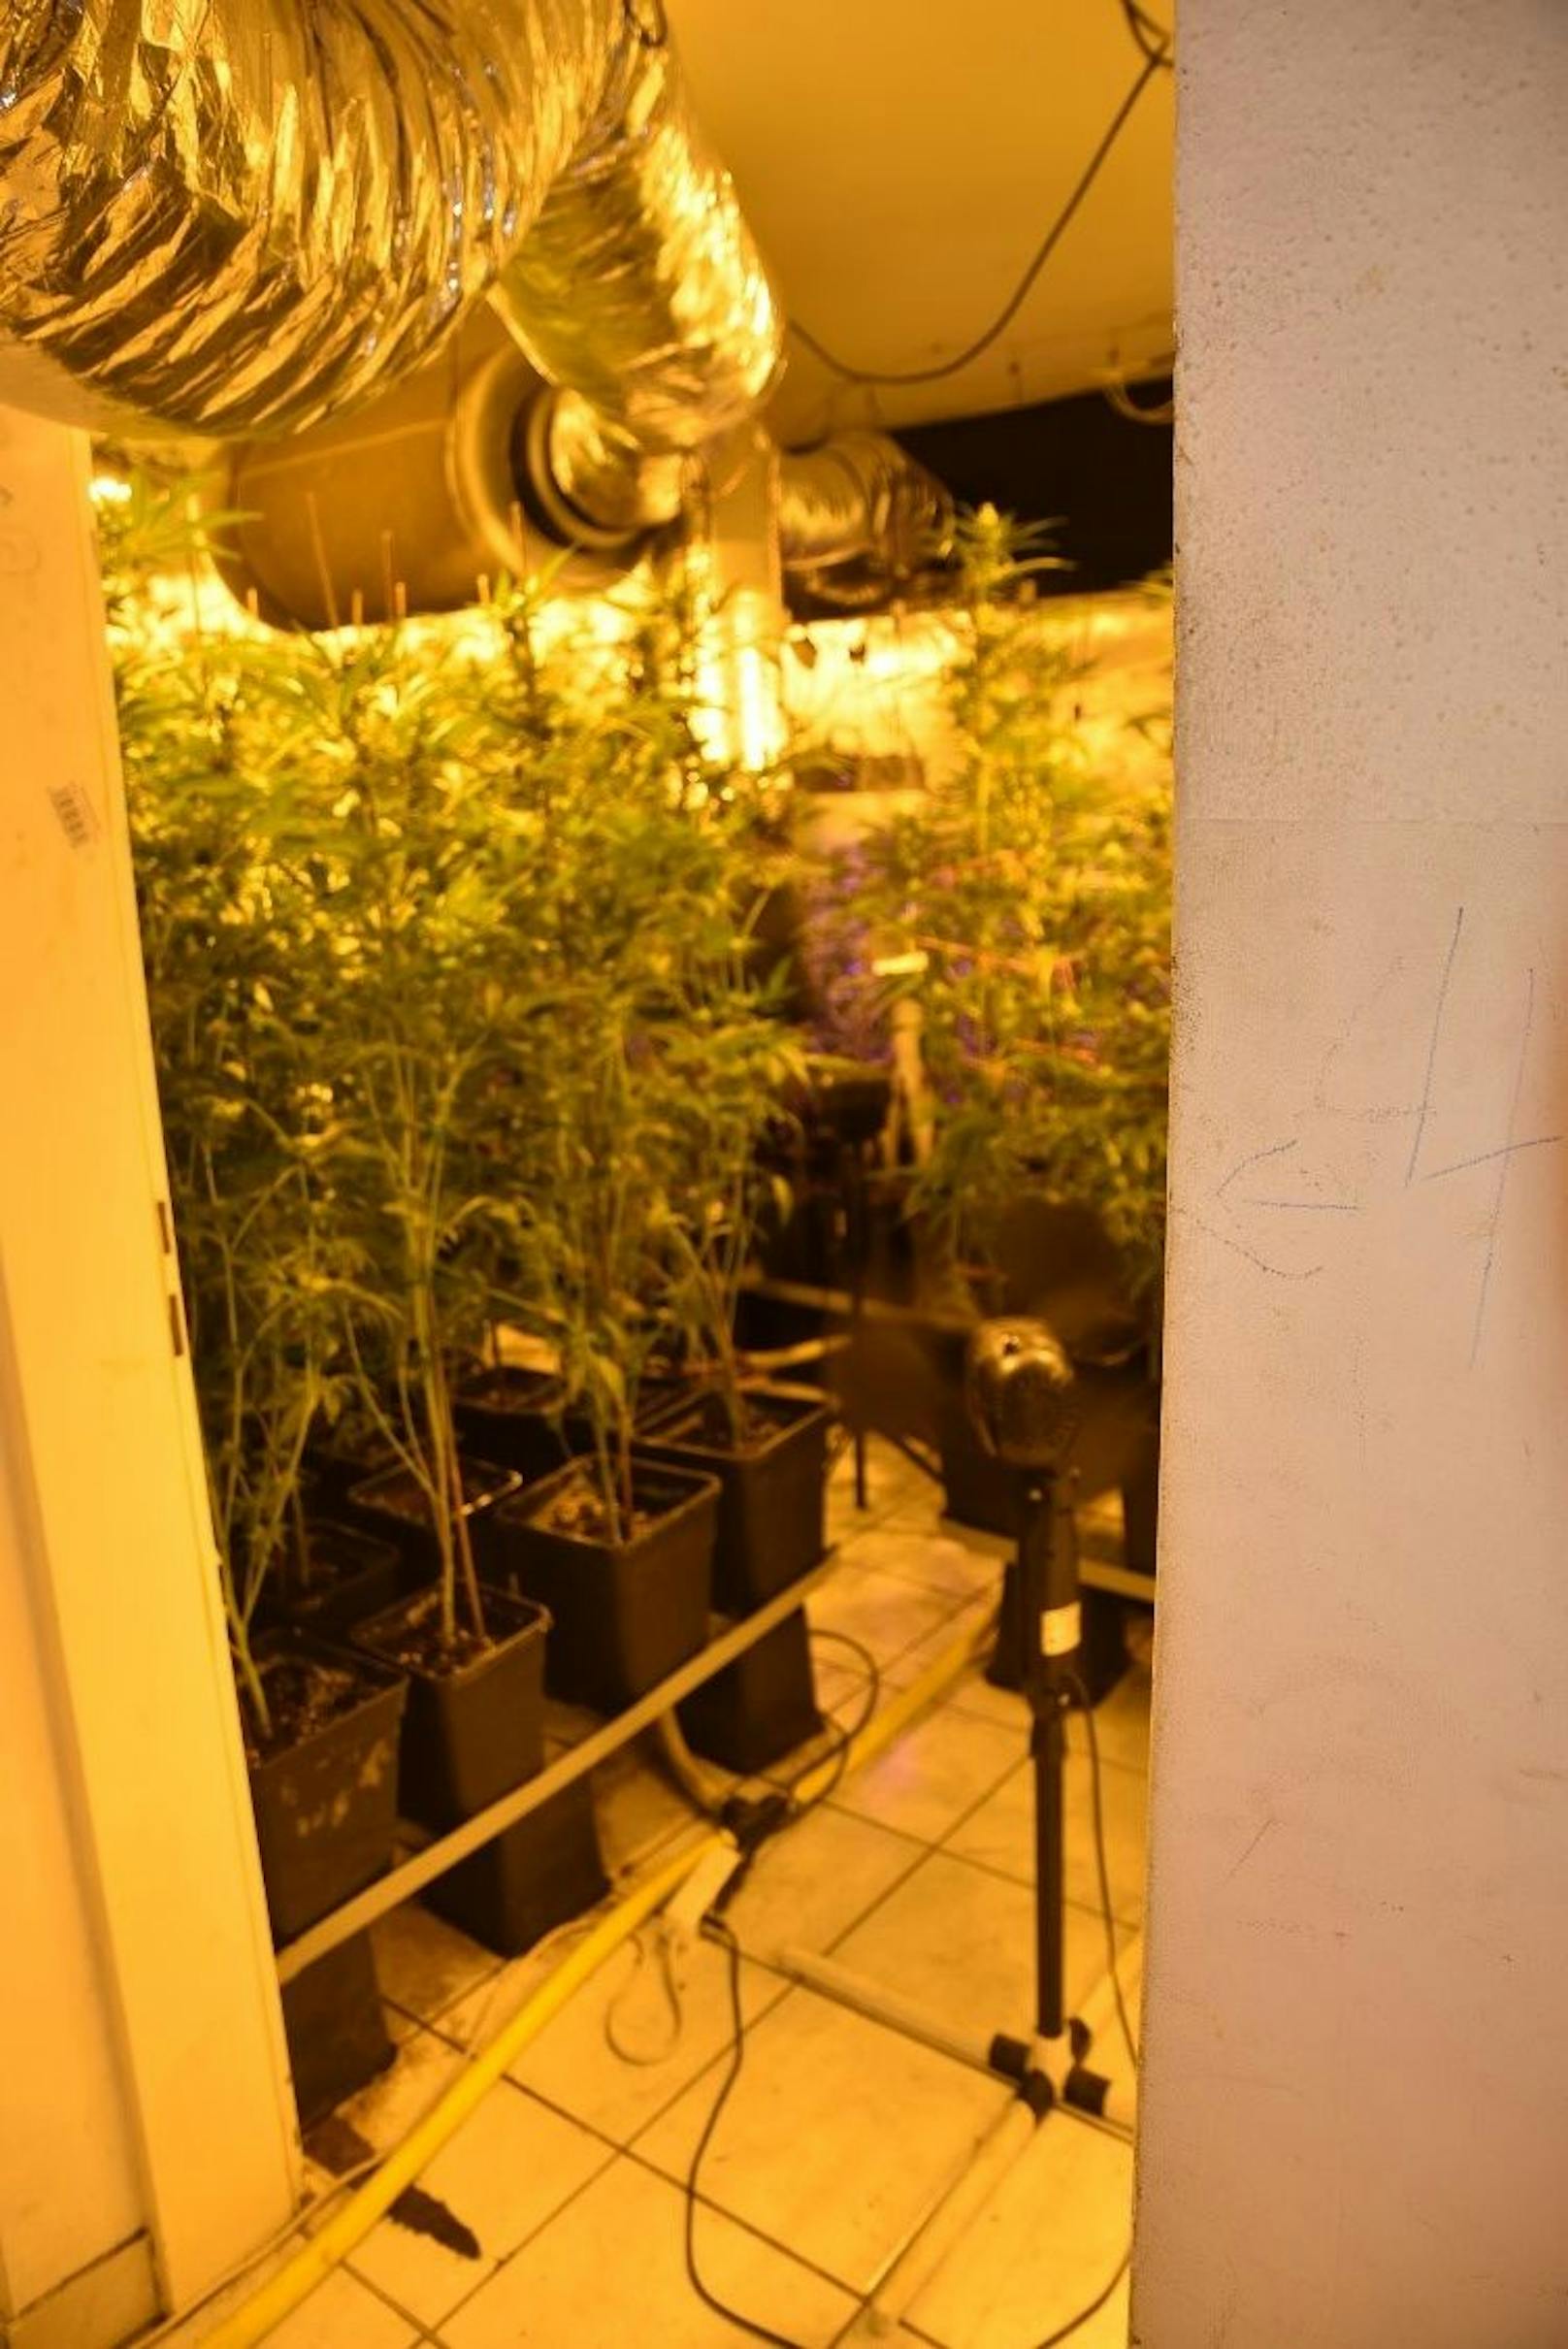 Die Beamten fanden rund 670 Cannabispflanzen in der Wohnung. 